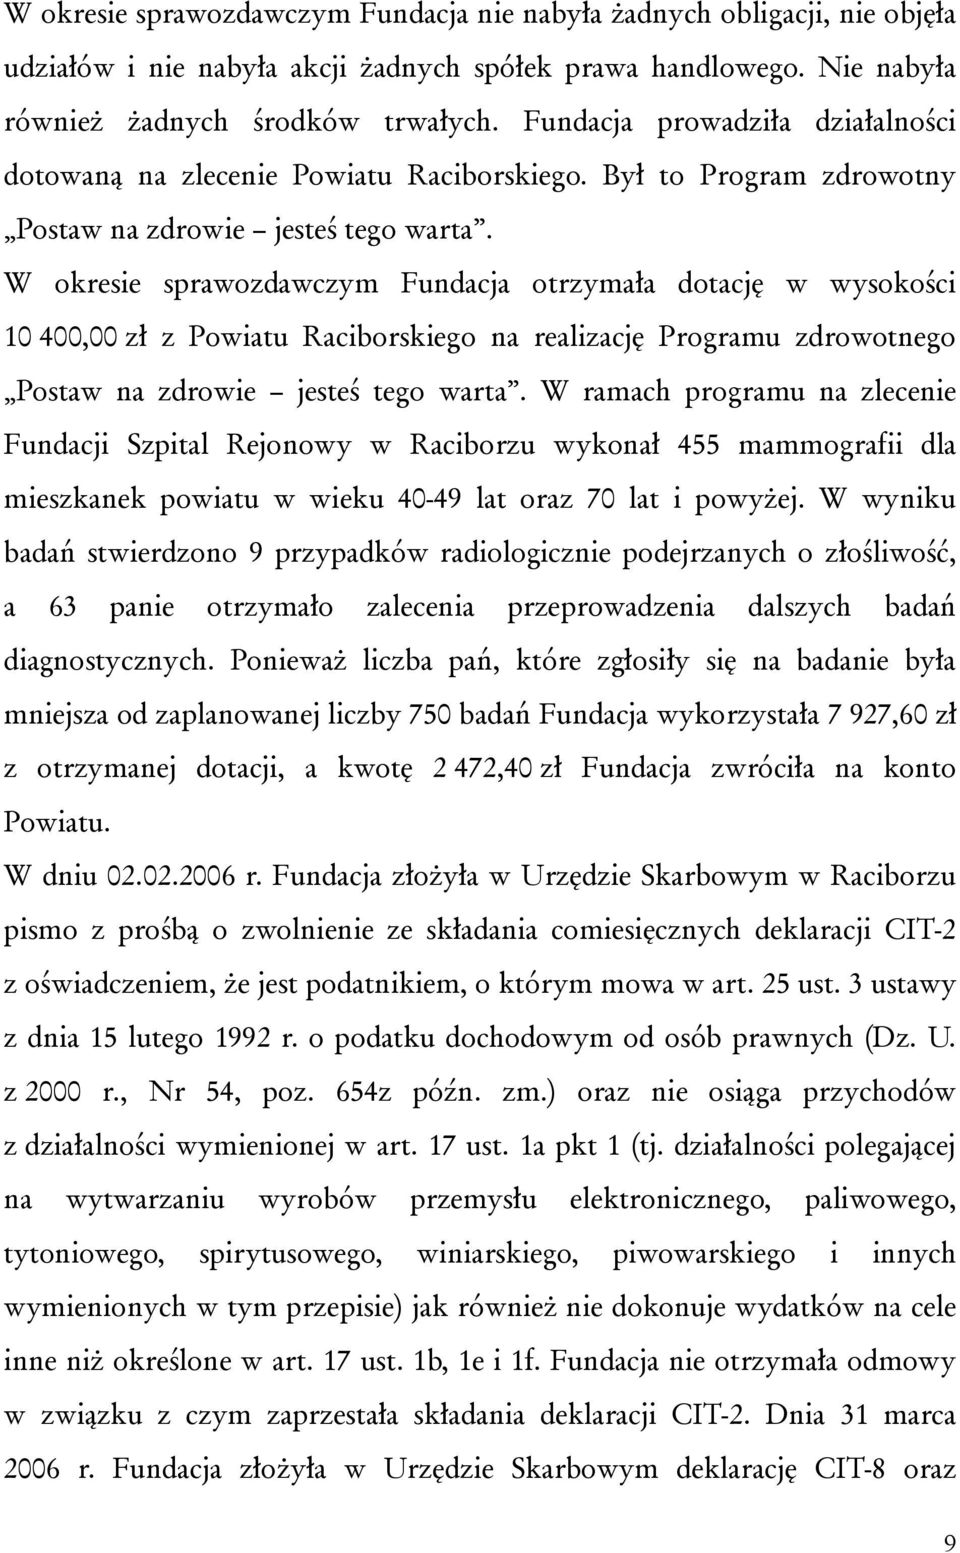 W okresie sprawozdawczym Fundacja otrzymała dotację w wysokości 10 400,00 zł z Powiatu Raciborskiego na realizację Programu zdrowotnego Postaw na zdrowie jesteś tego warta.